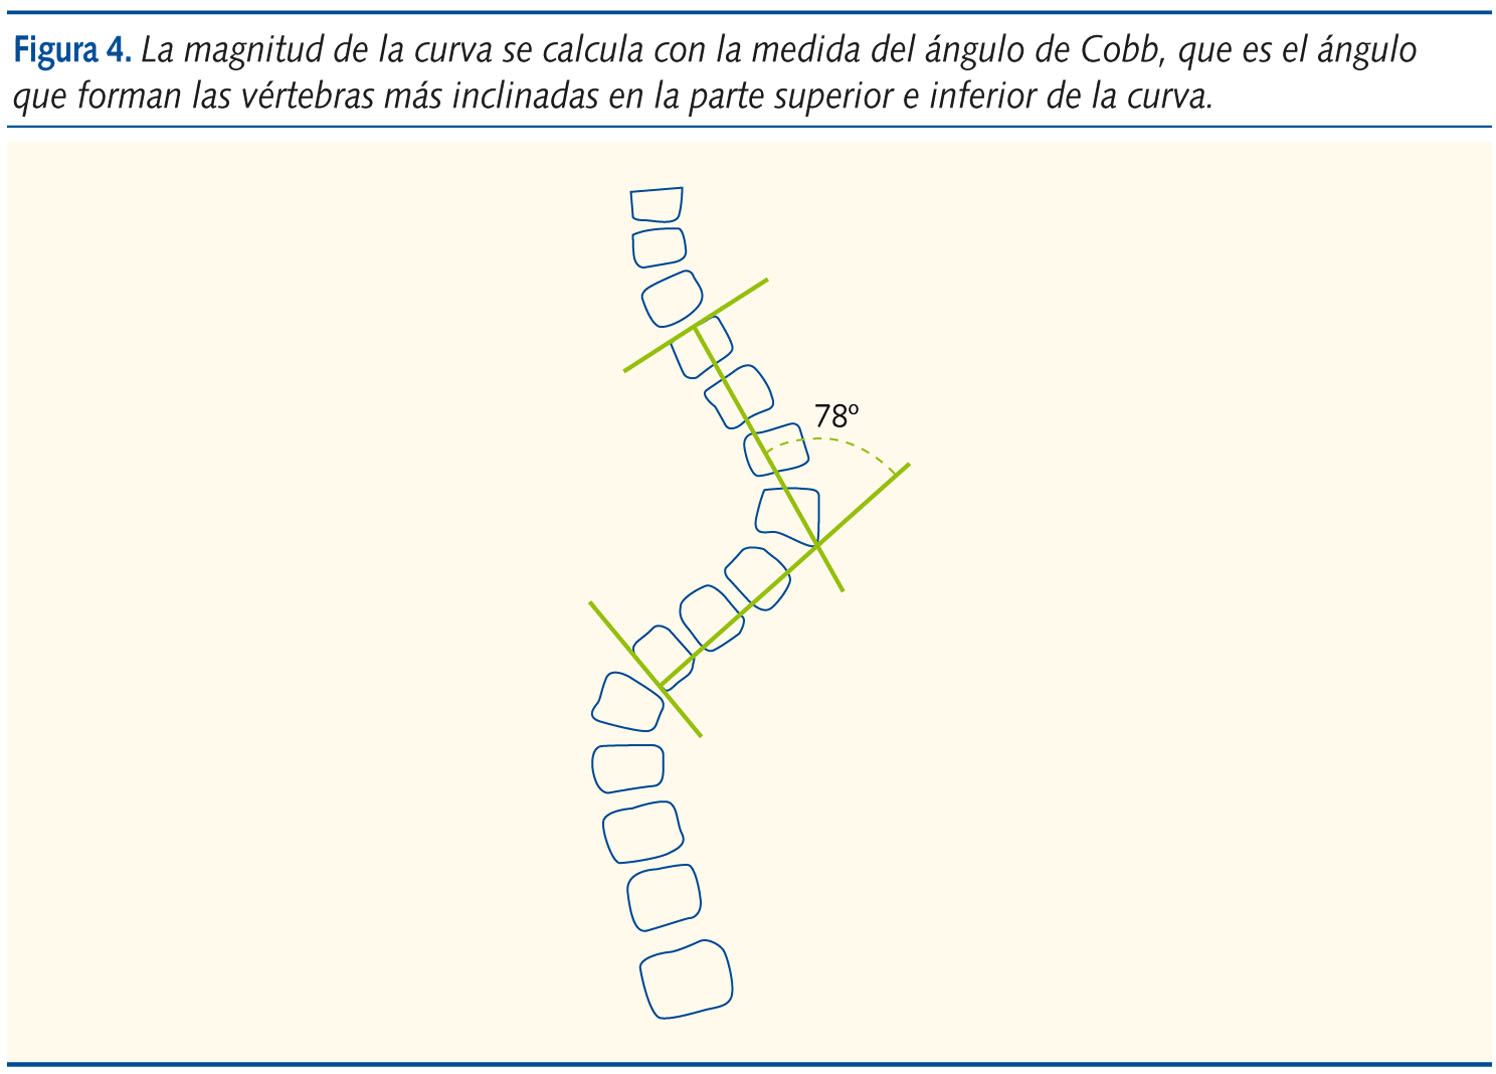 Figura 4. La magnitud de la curva se calcula con la medida del ángulo de Cobb, que es el ángulo que forman las vértebras más inclinadas en la parte superior e inferior de la curva.